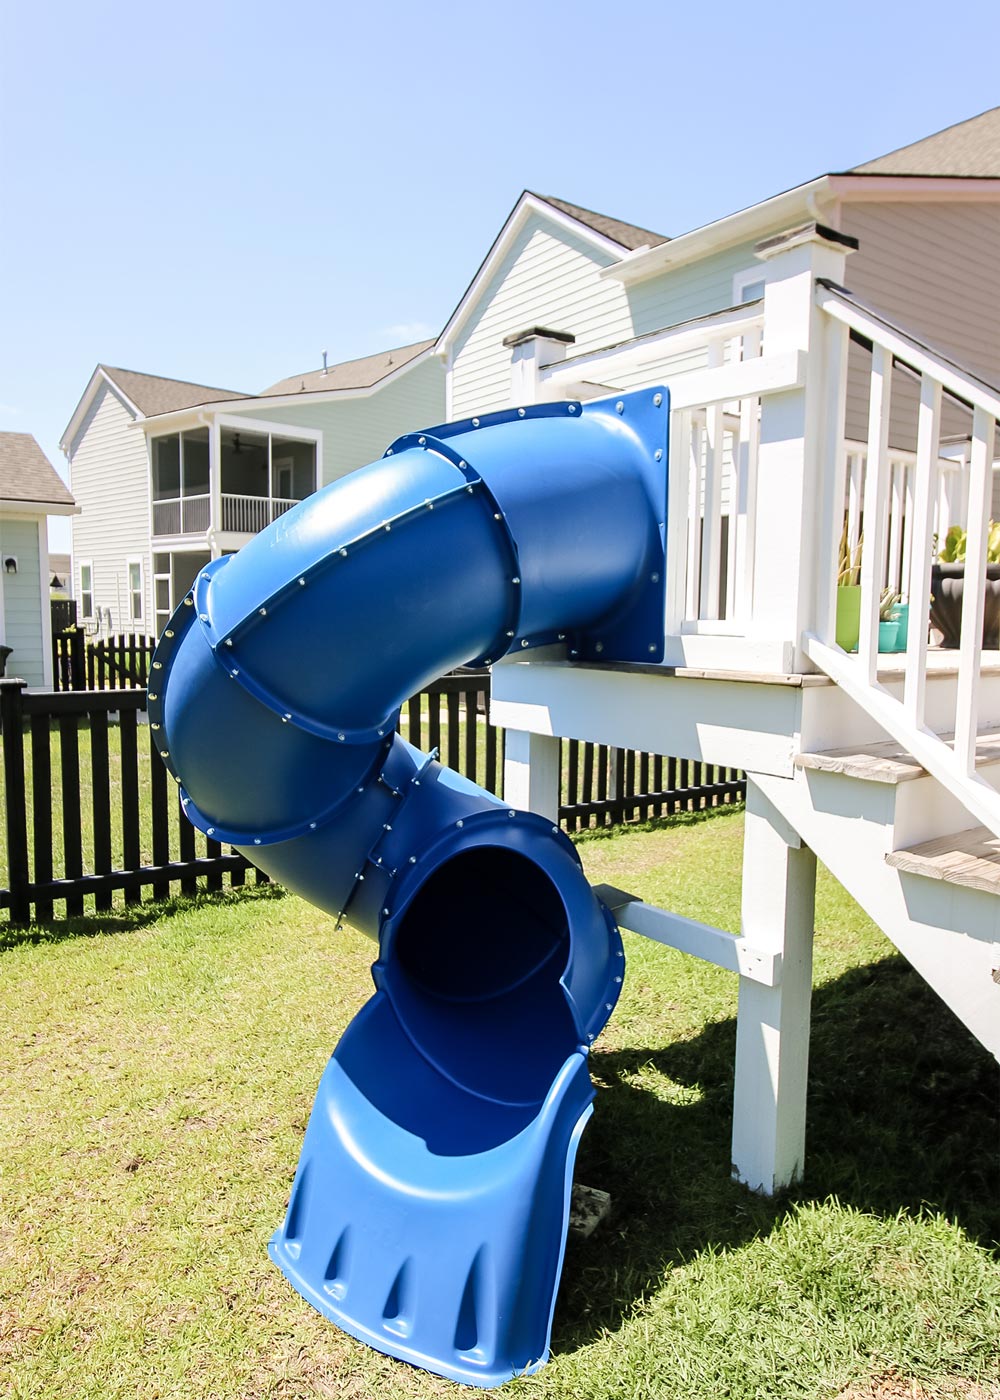 a blue slide in a backyard